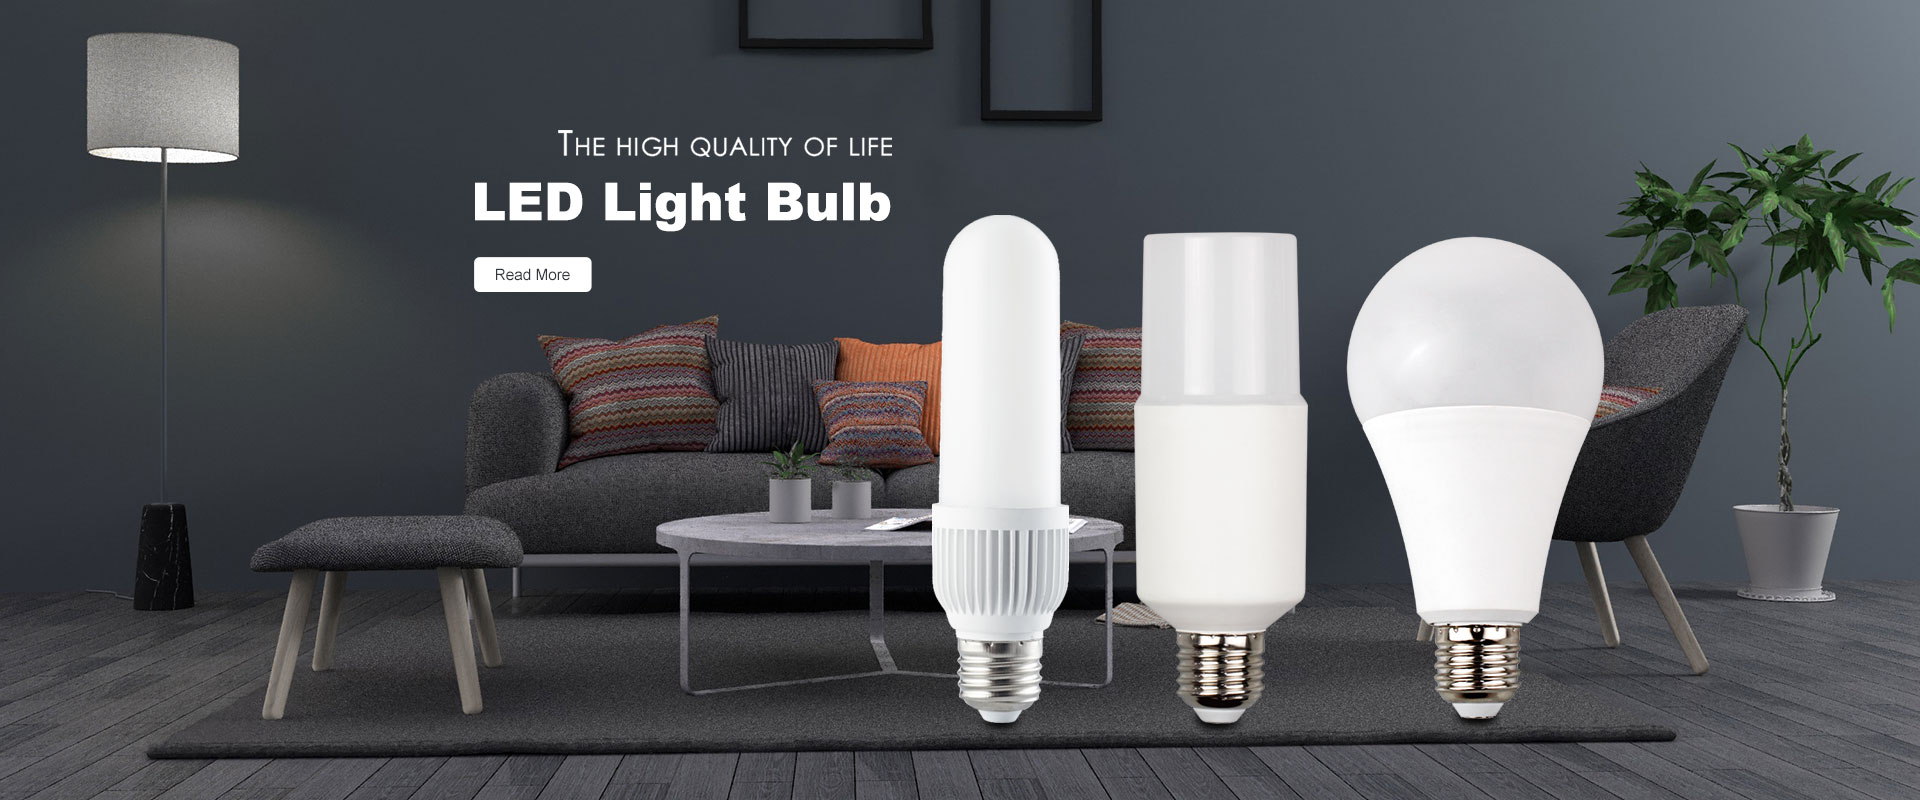 Hersteller von LED-Glühbirnen